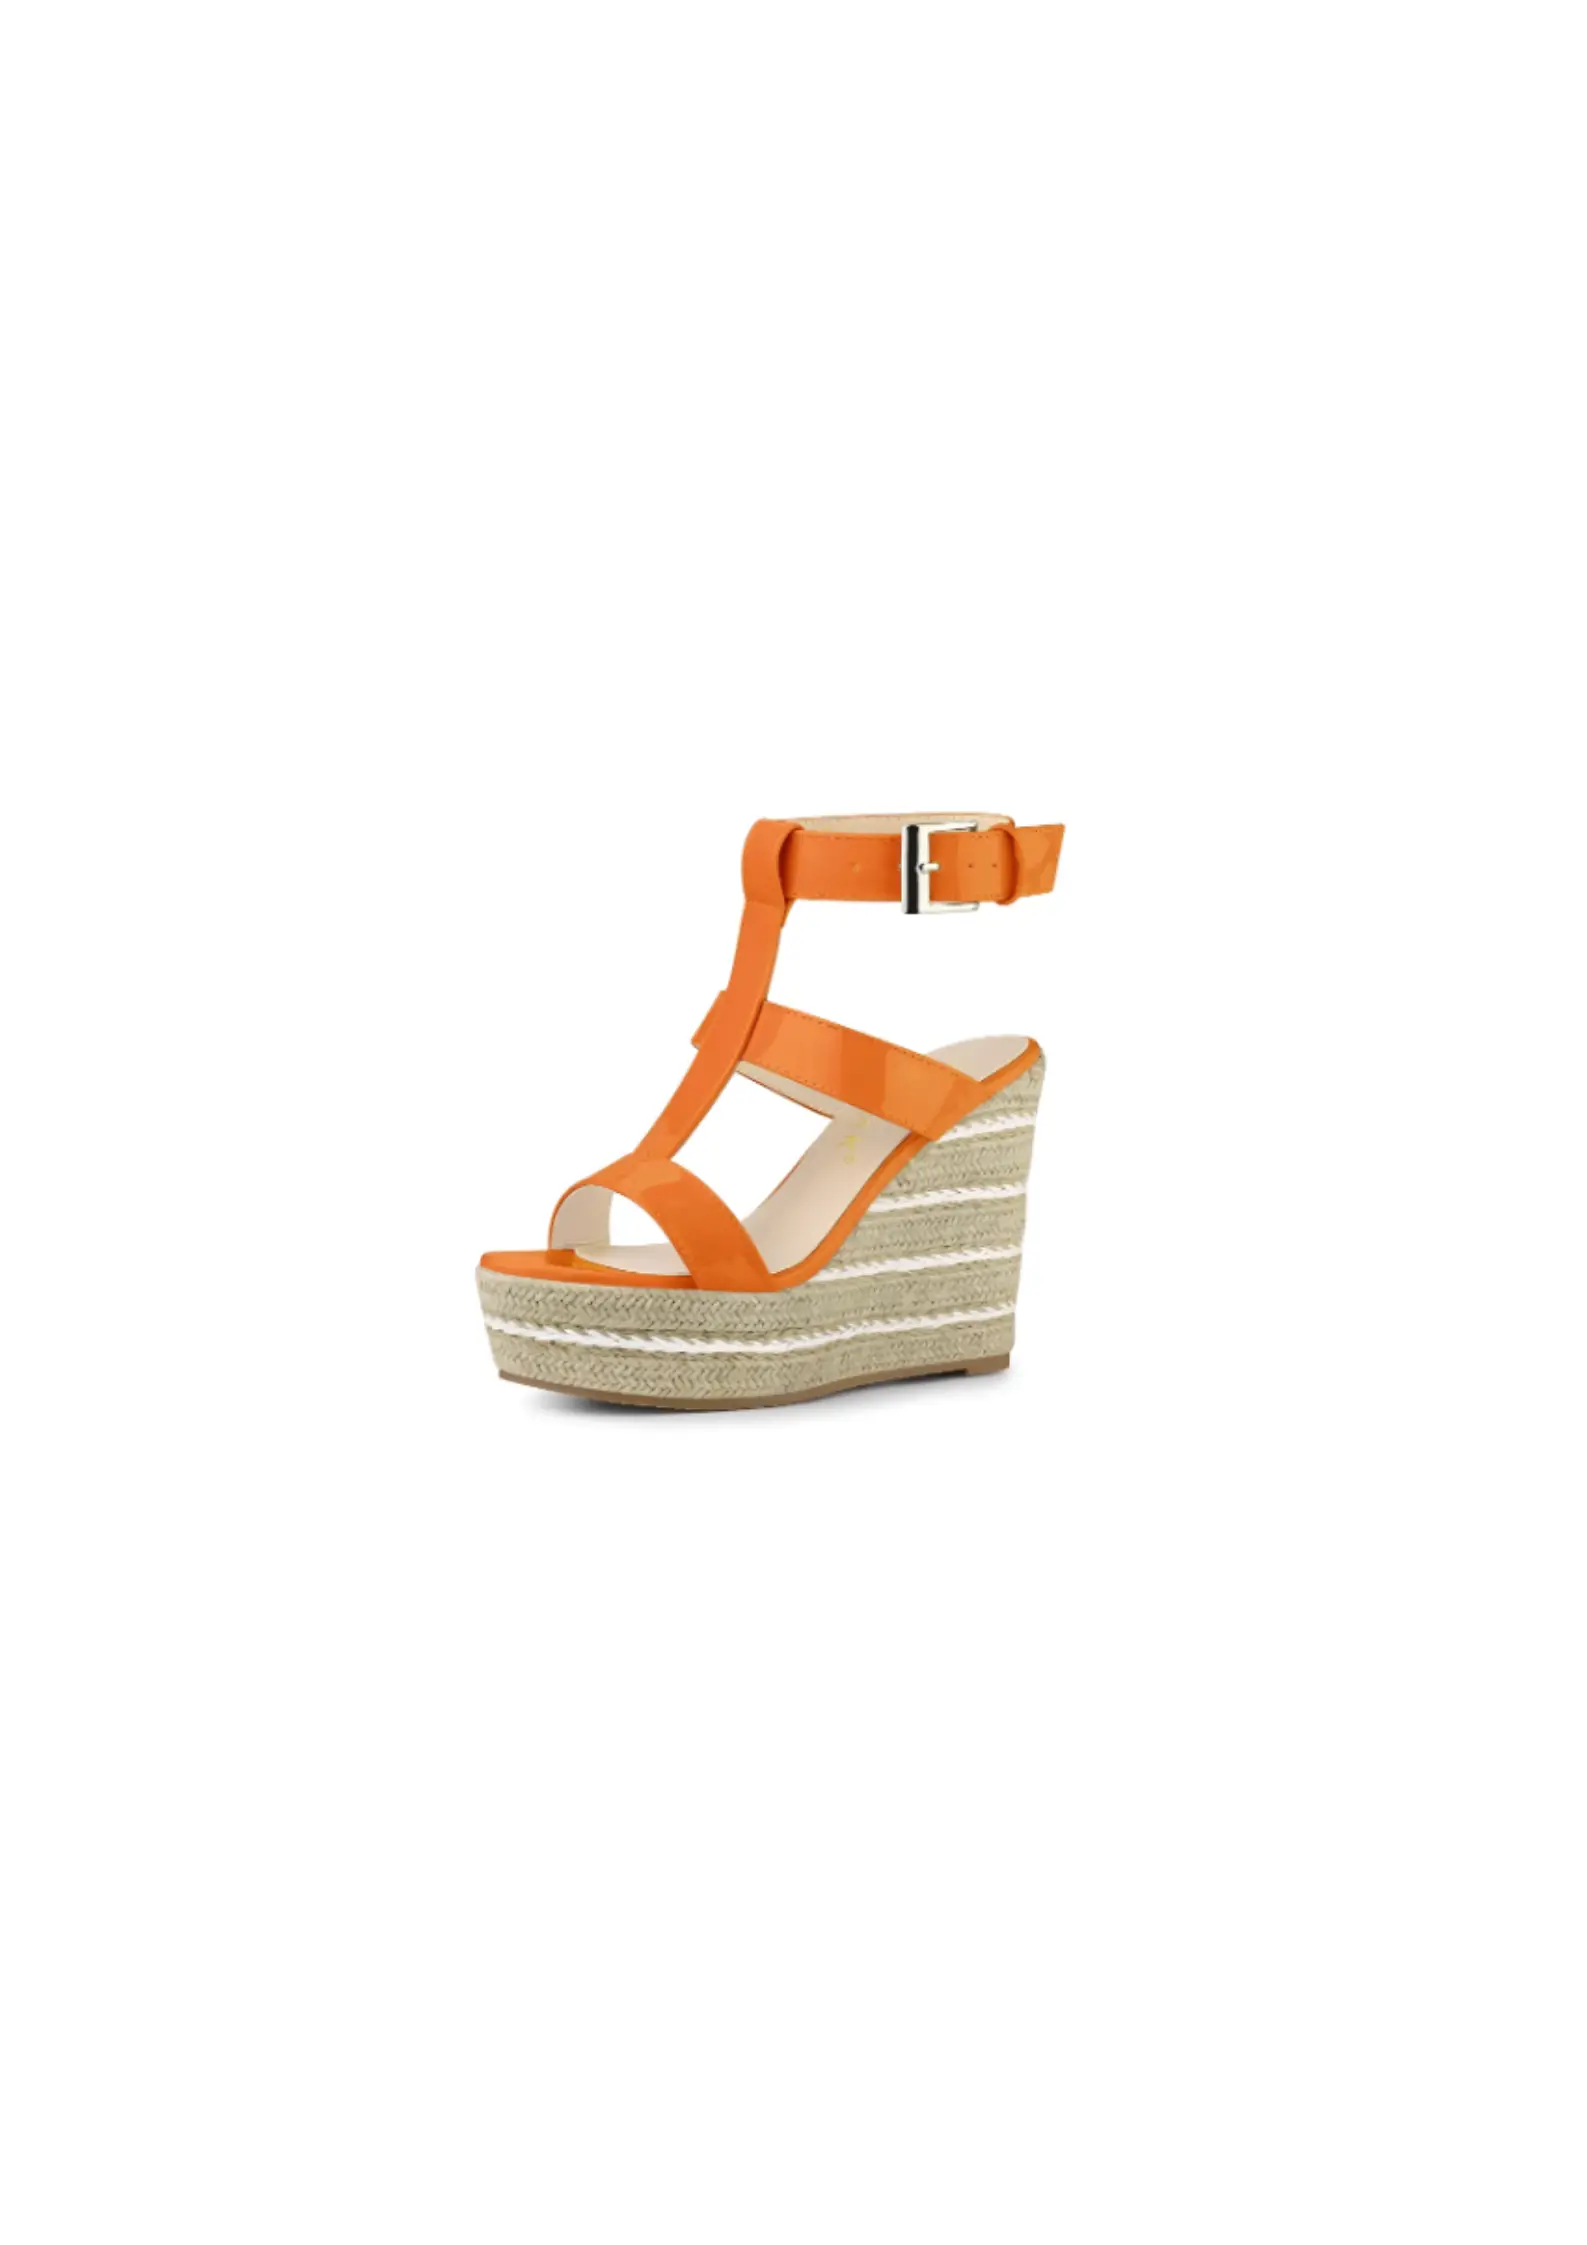 Allegra K Women’s Strappy Platform Wedge Sandals